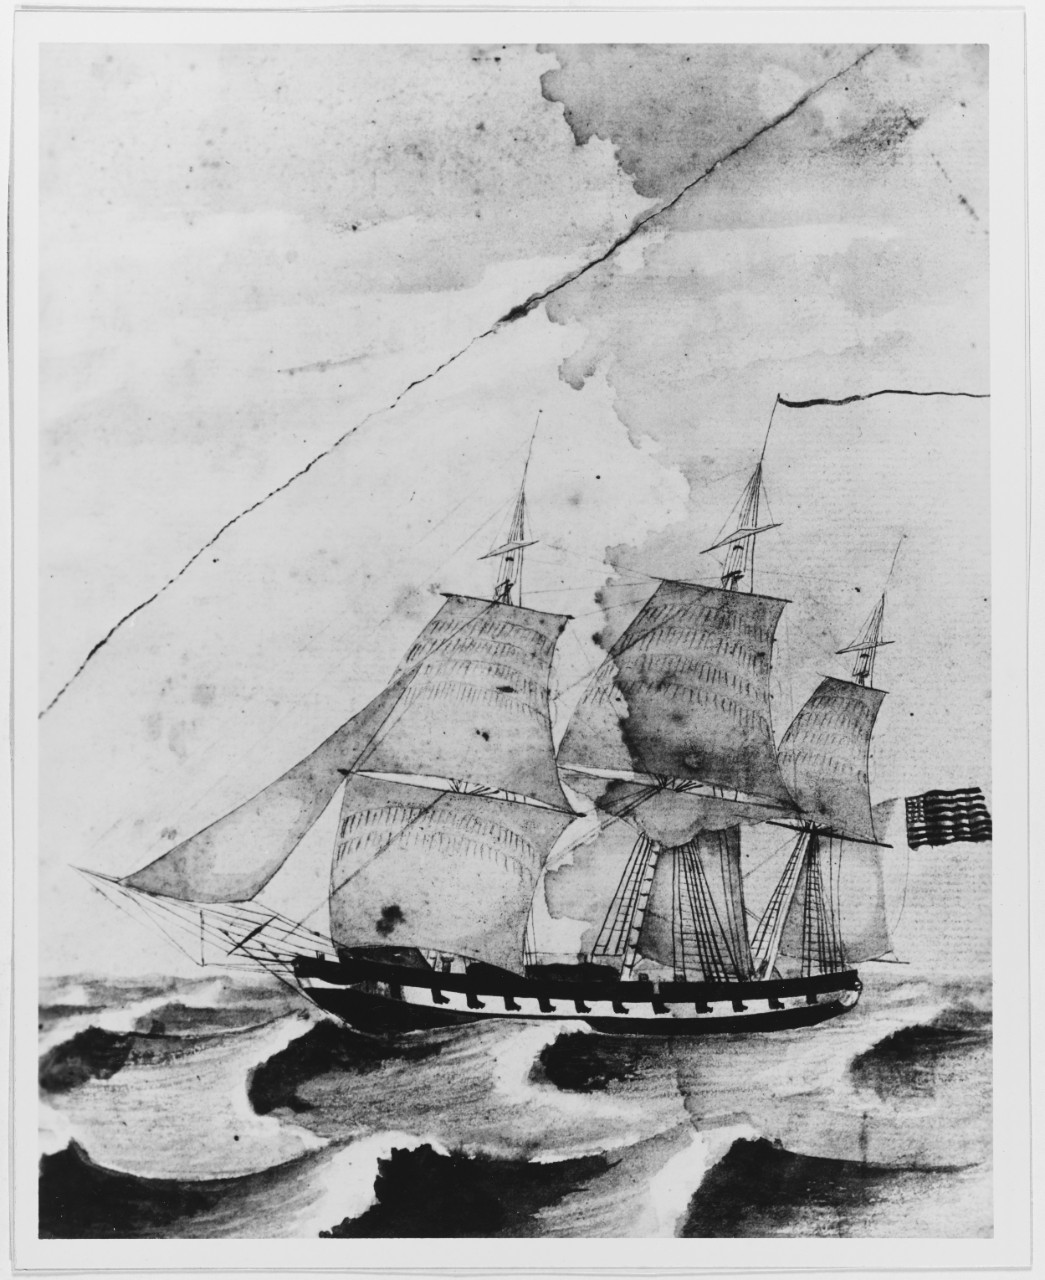 USS CYANE (1837-1887)